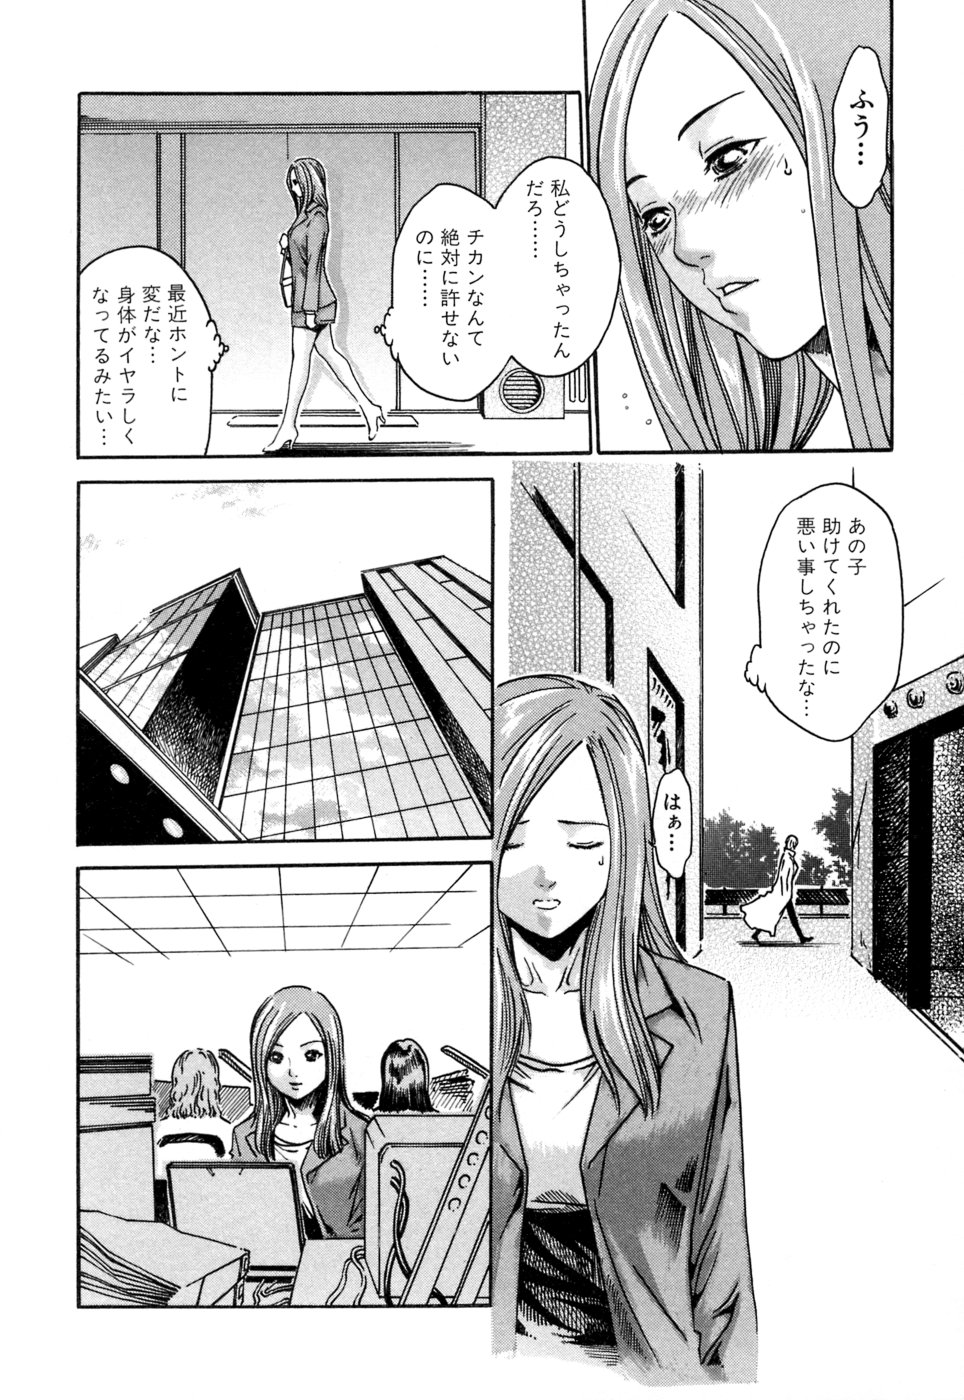 [Haruki] Kisei Juui Suzune 1 page 14 full